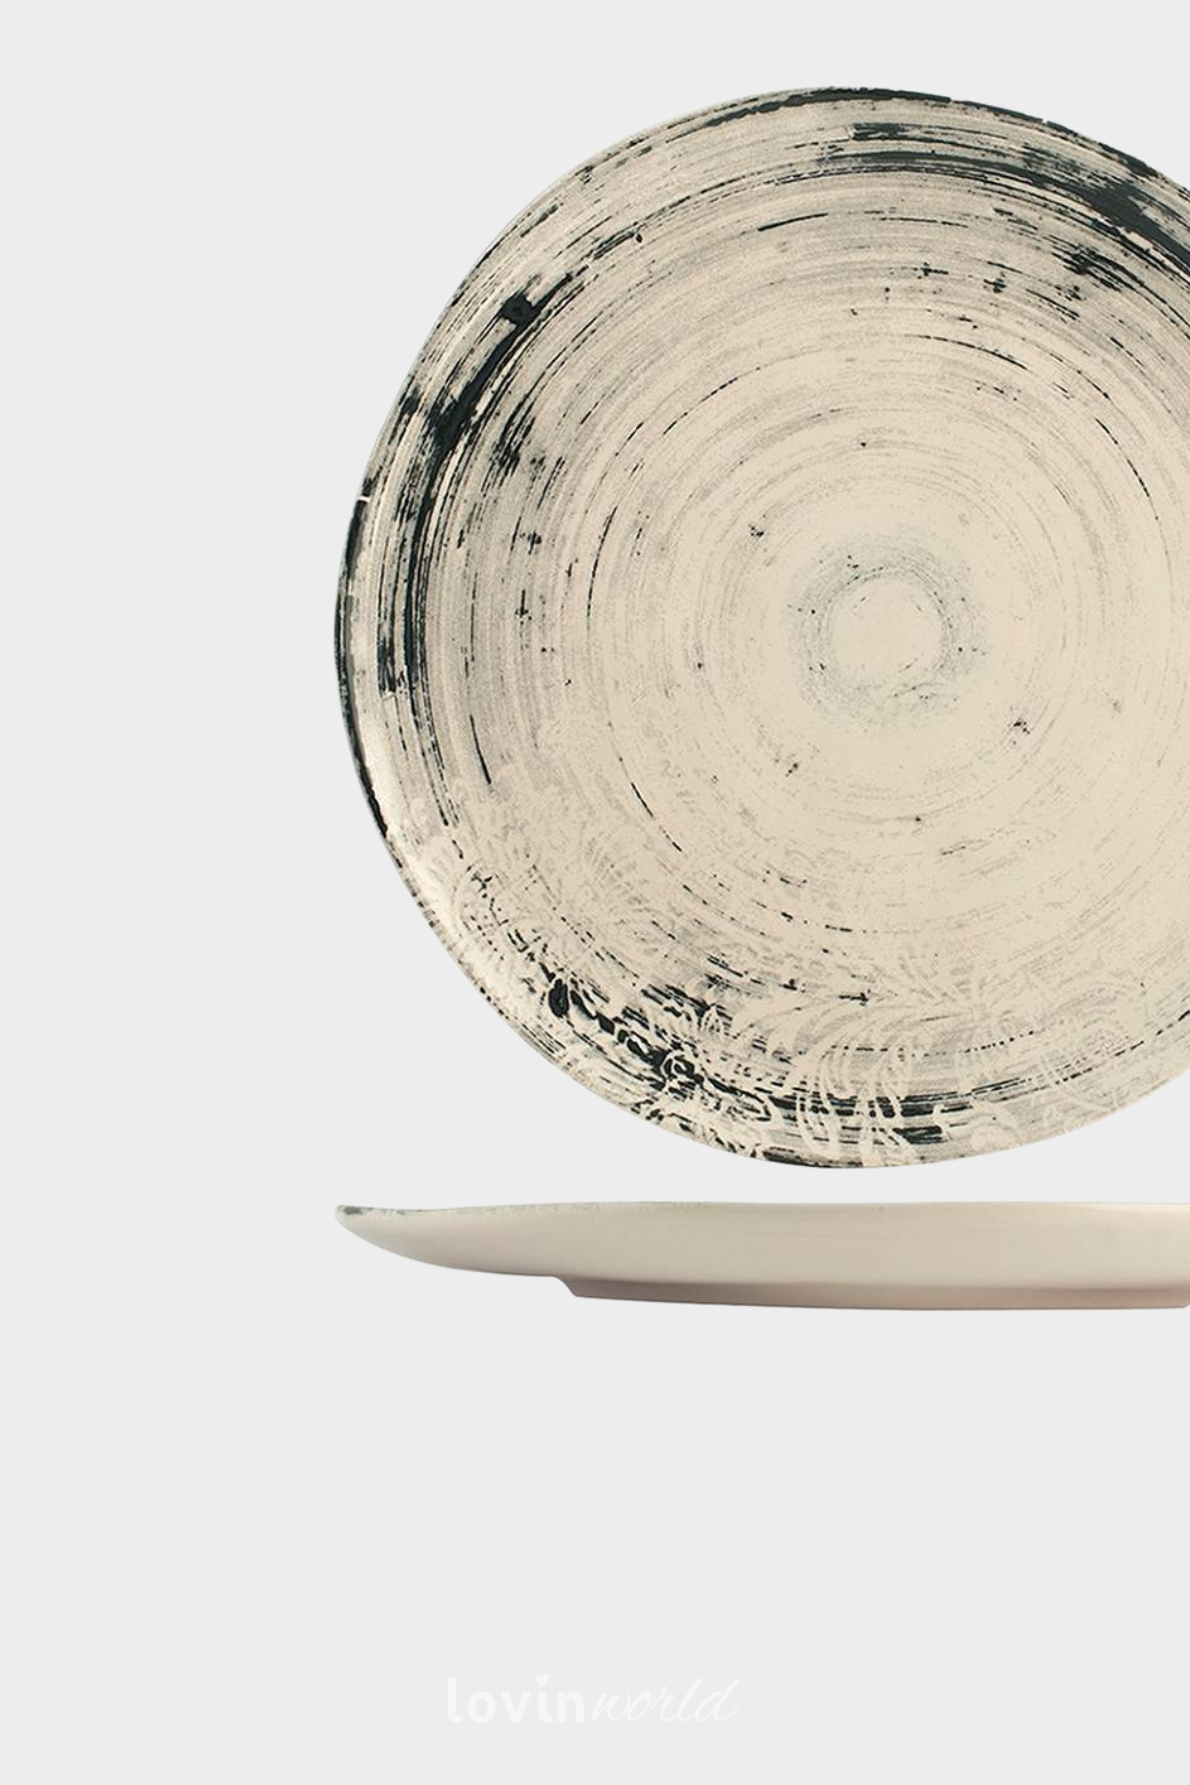 Piatto piano Silk in stoneware in colore beige 26 cm.-2